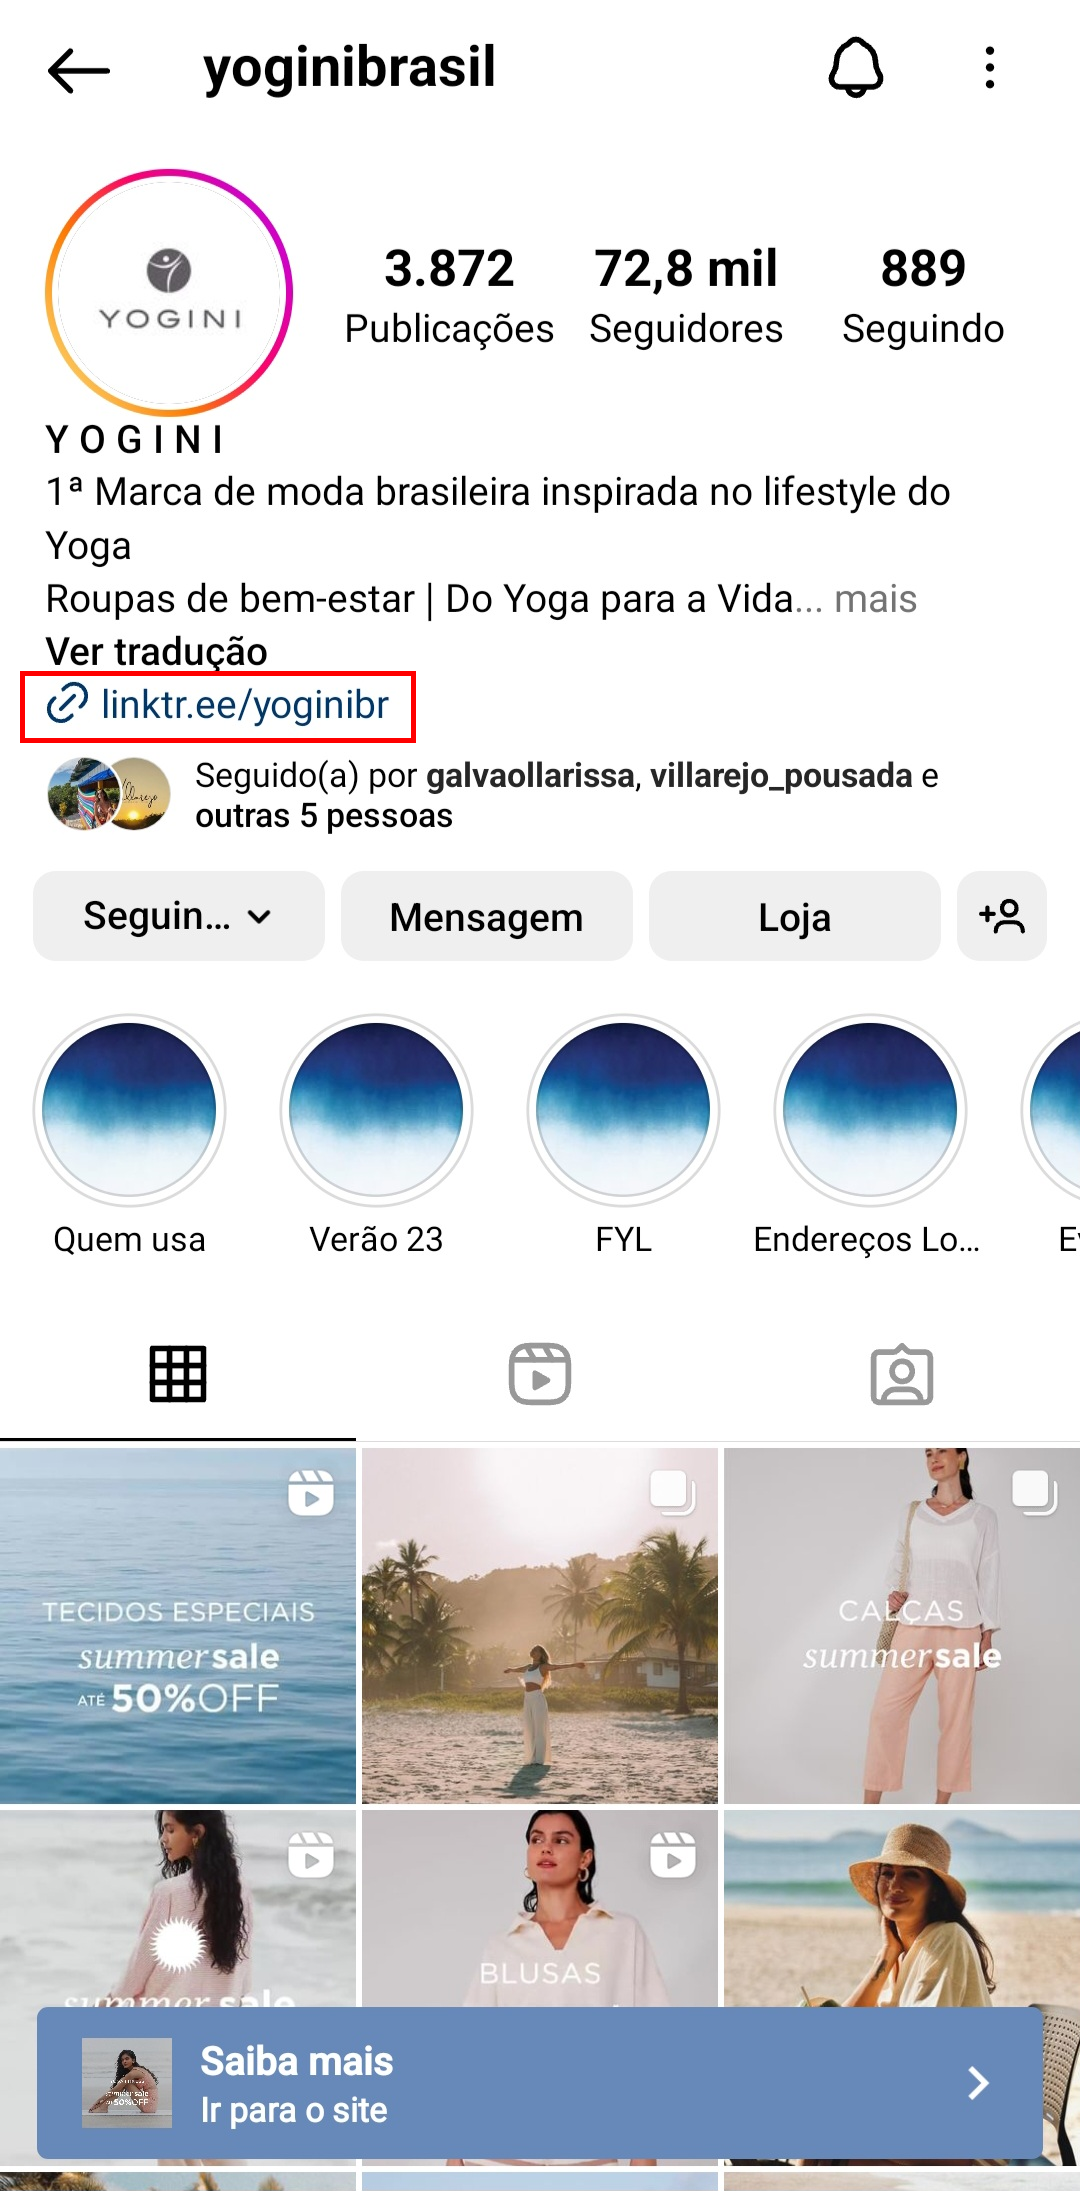 como-vender-no-instagram-yogini